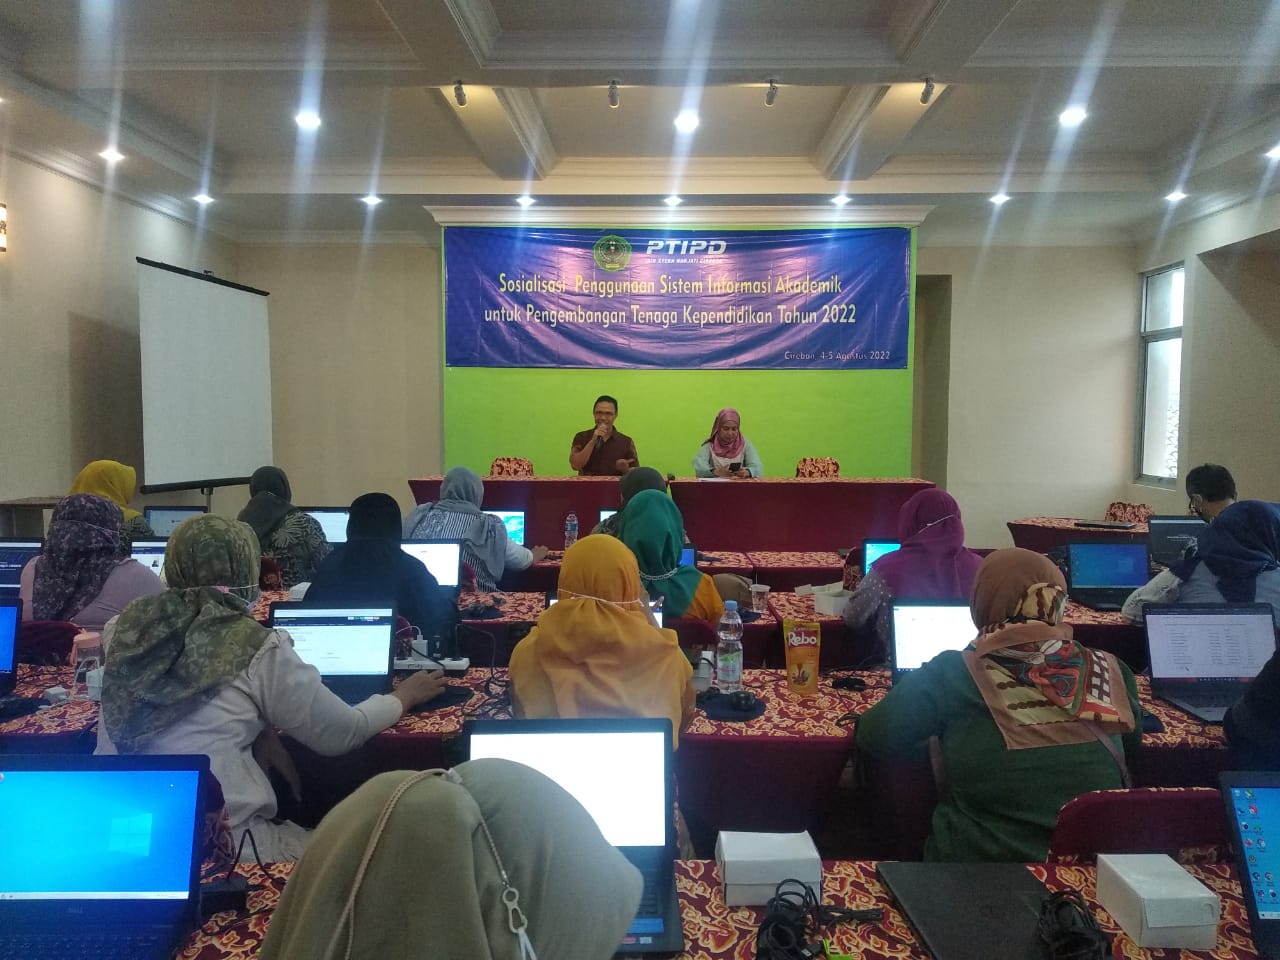 PTIPD IAIN Cirebon Sosialisasi Sitem Informasi Akademik